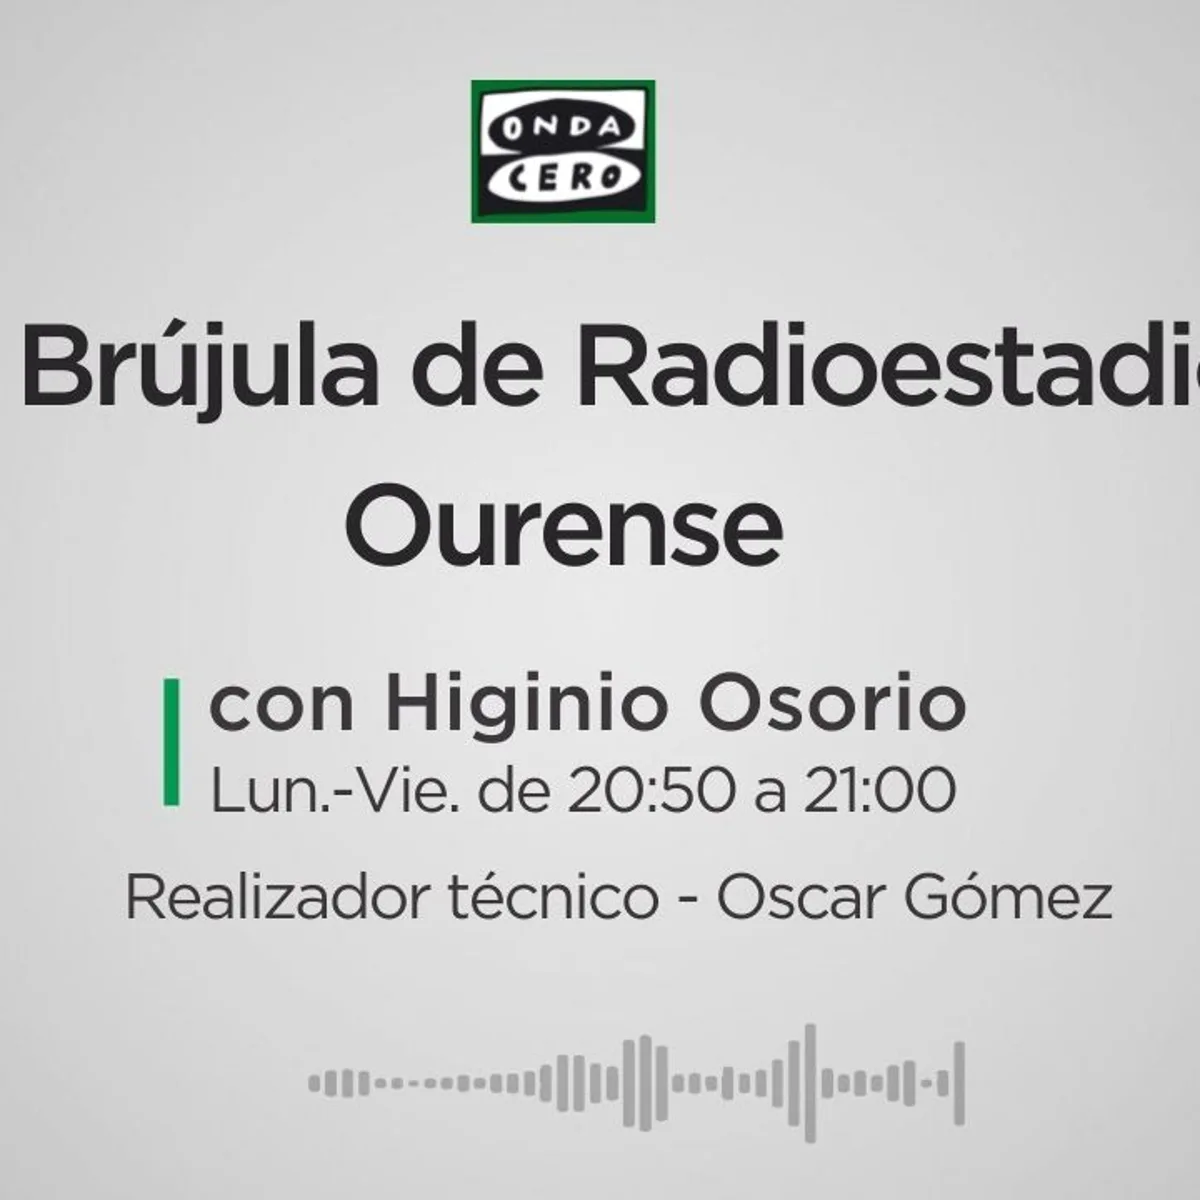 A Xornada en Ourense fin de semana | Radio